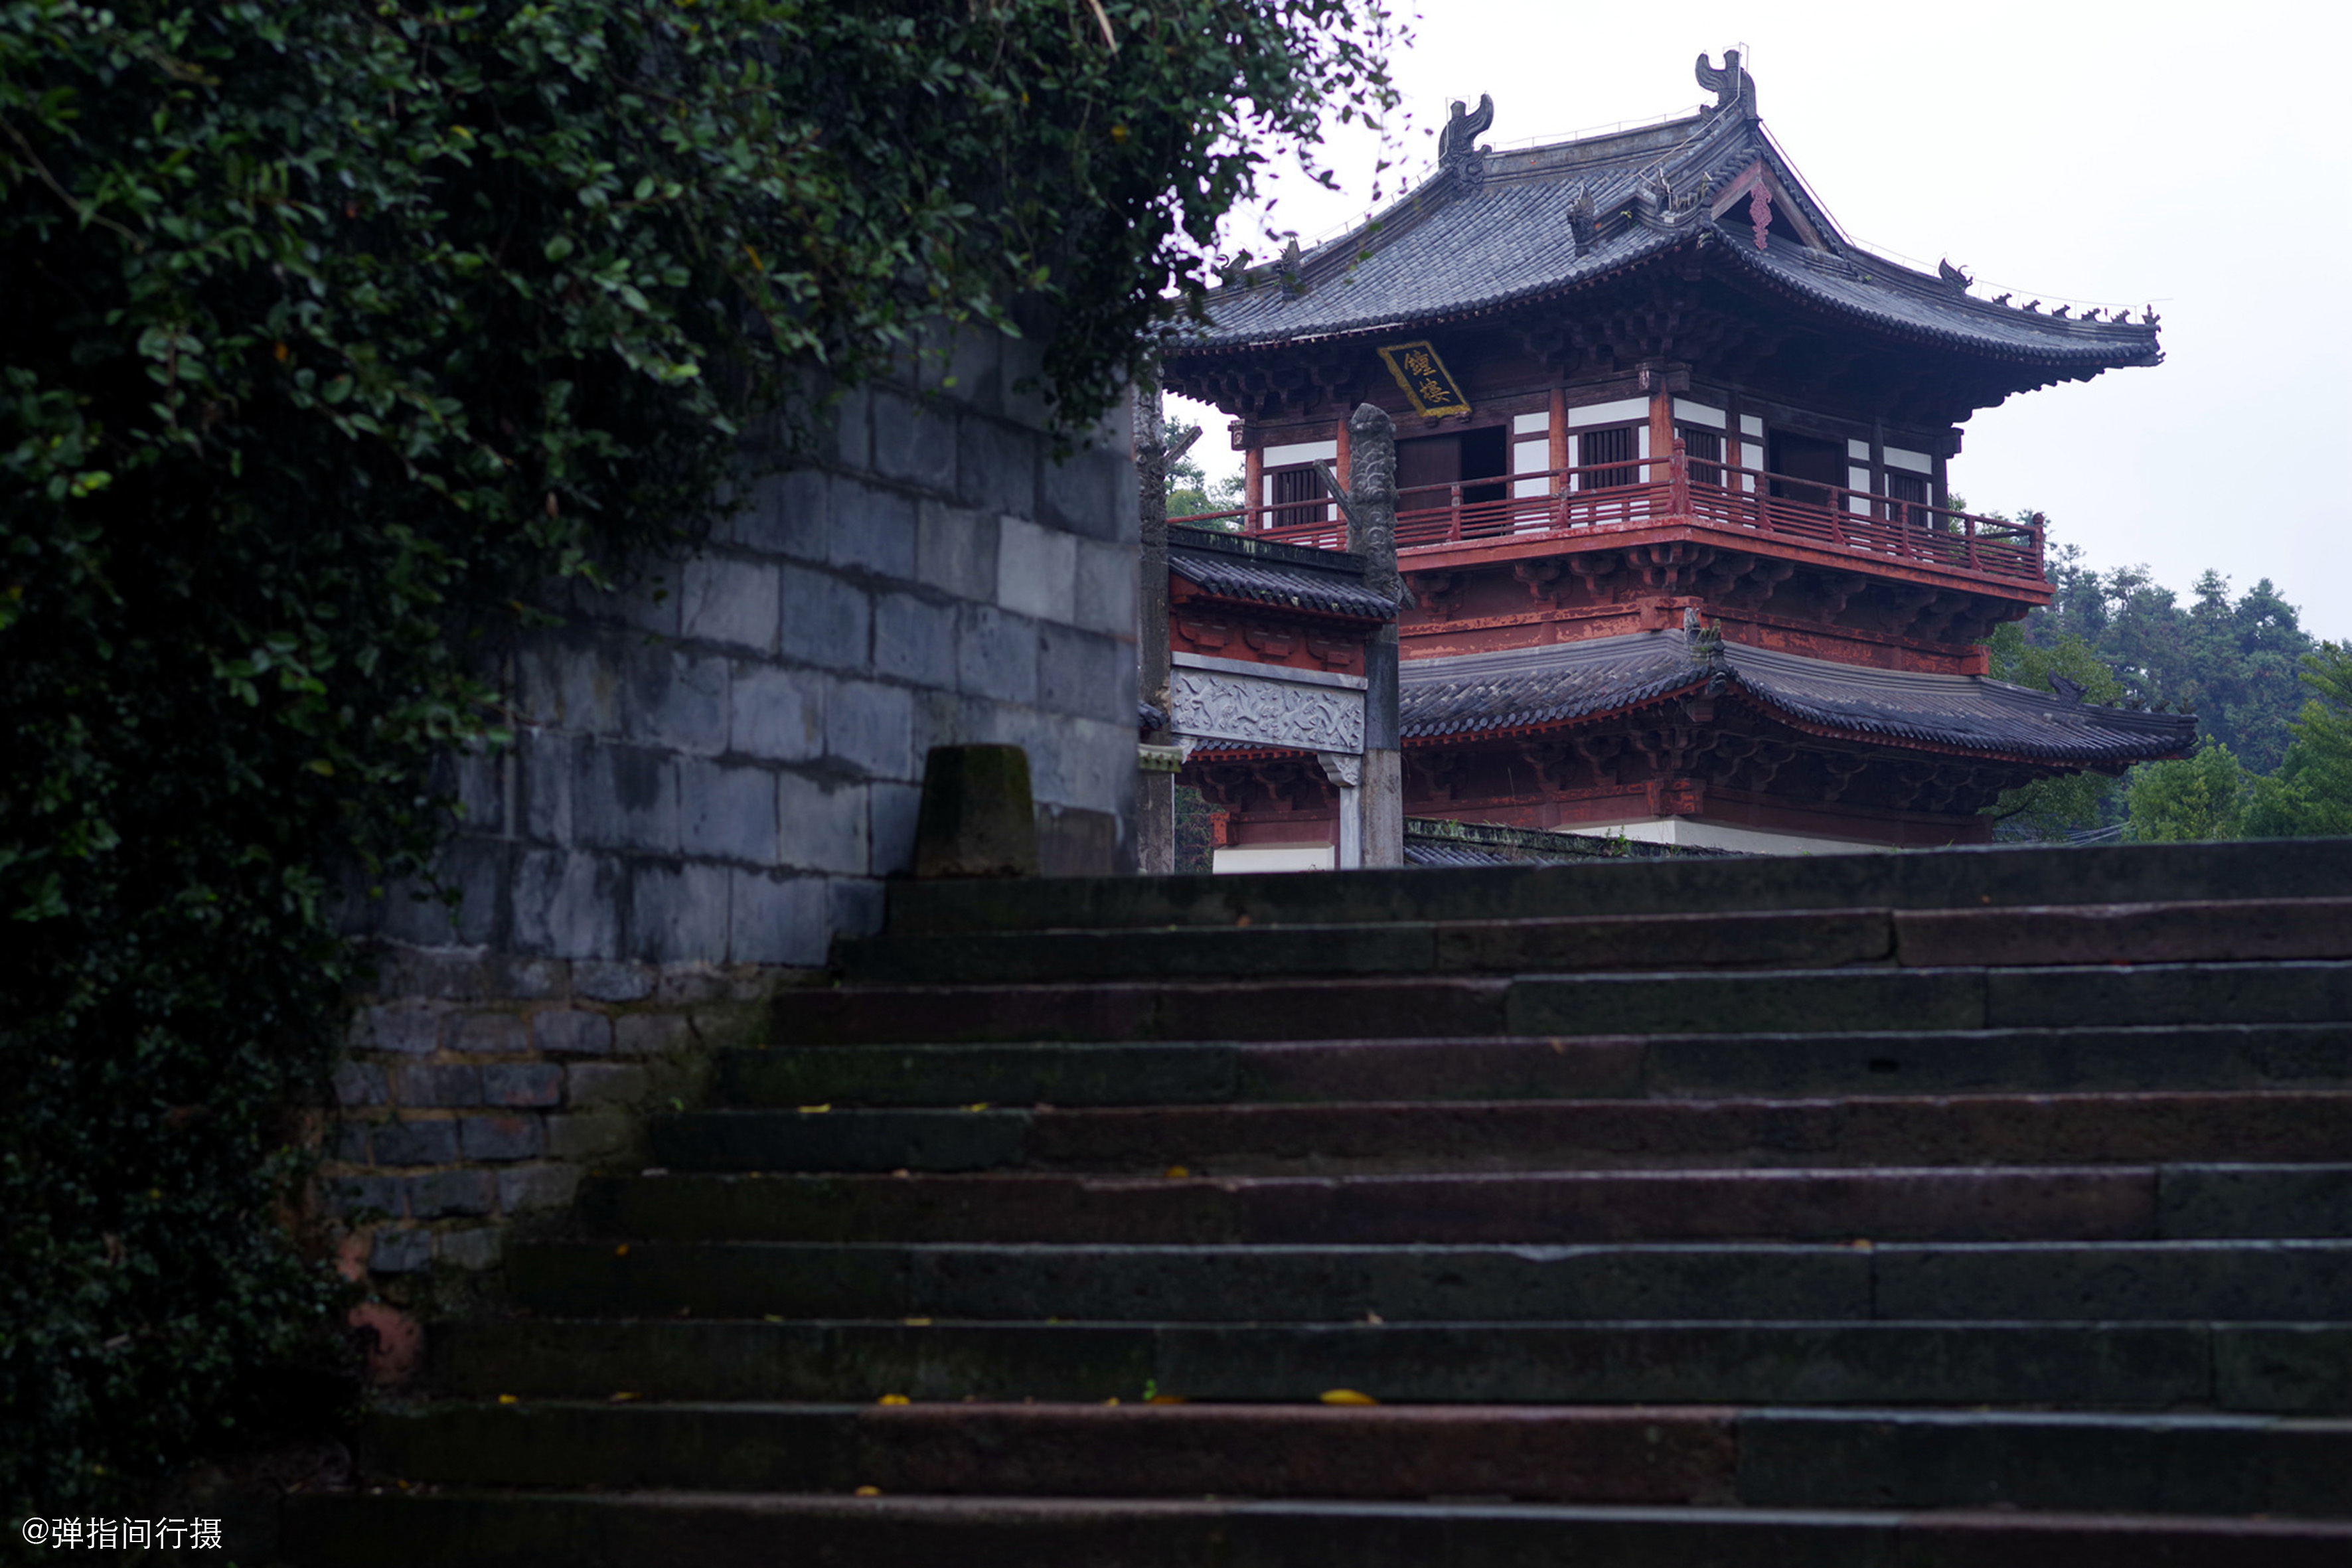 江西龙虎山 发现史上规模最大的道教祖庭遗址 是北京故宫的一半 上清宫